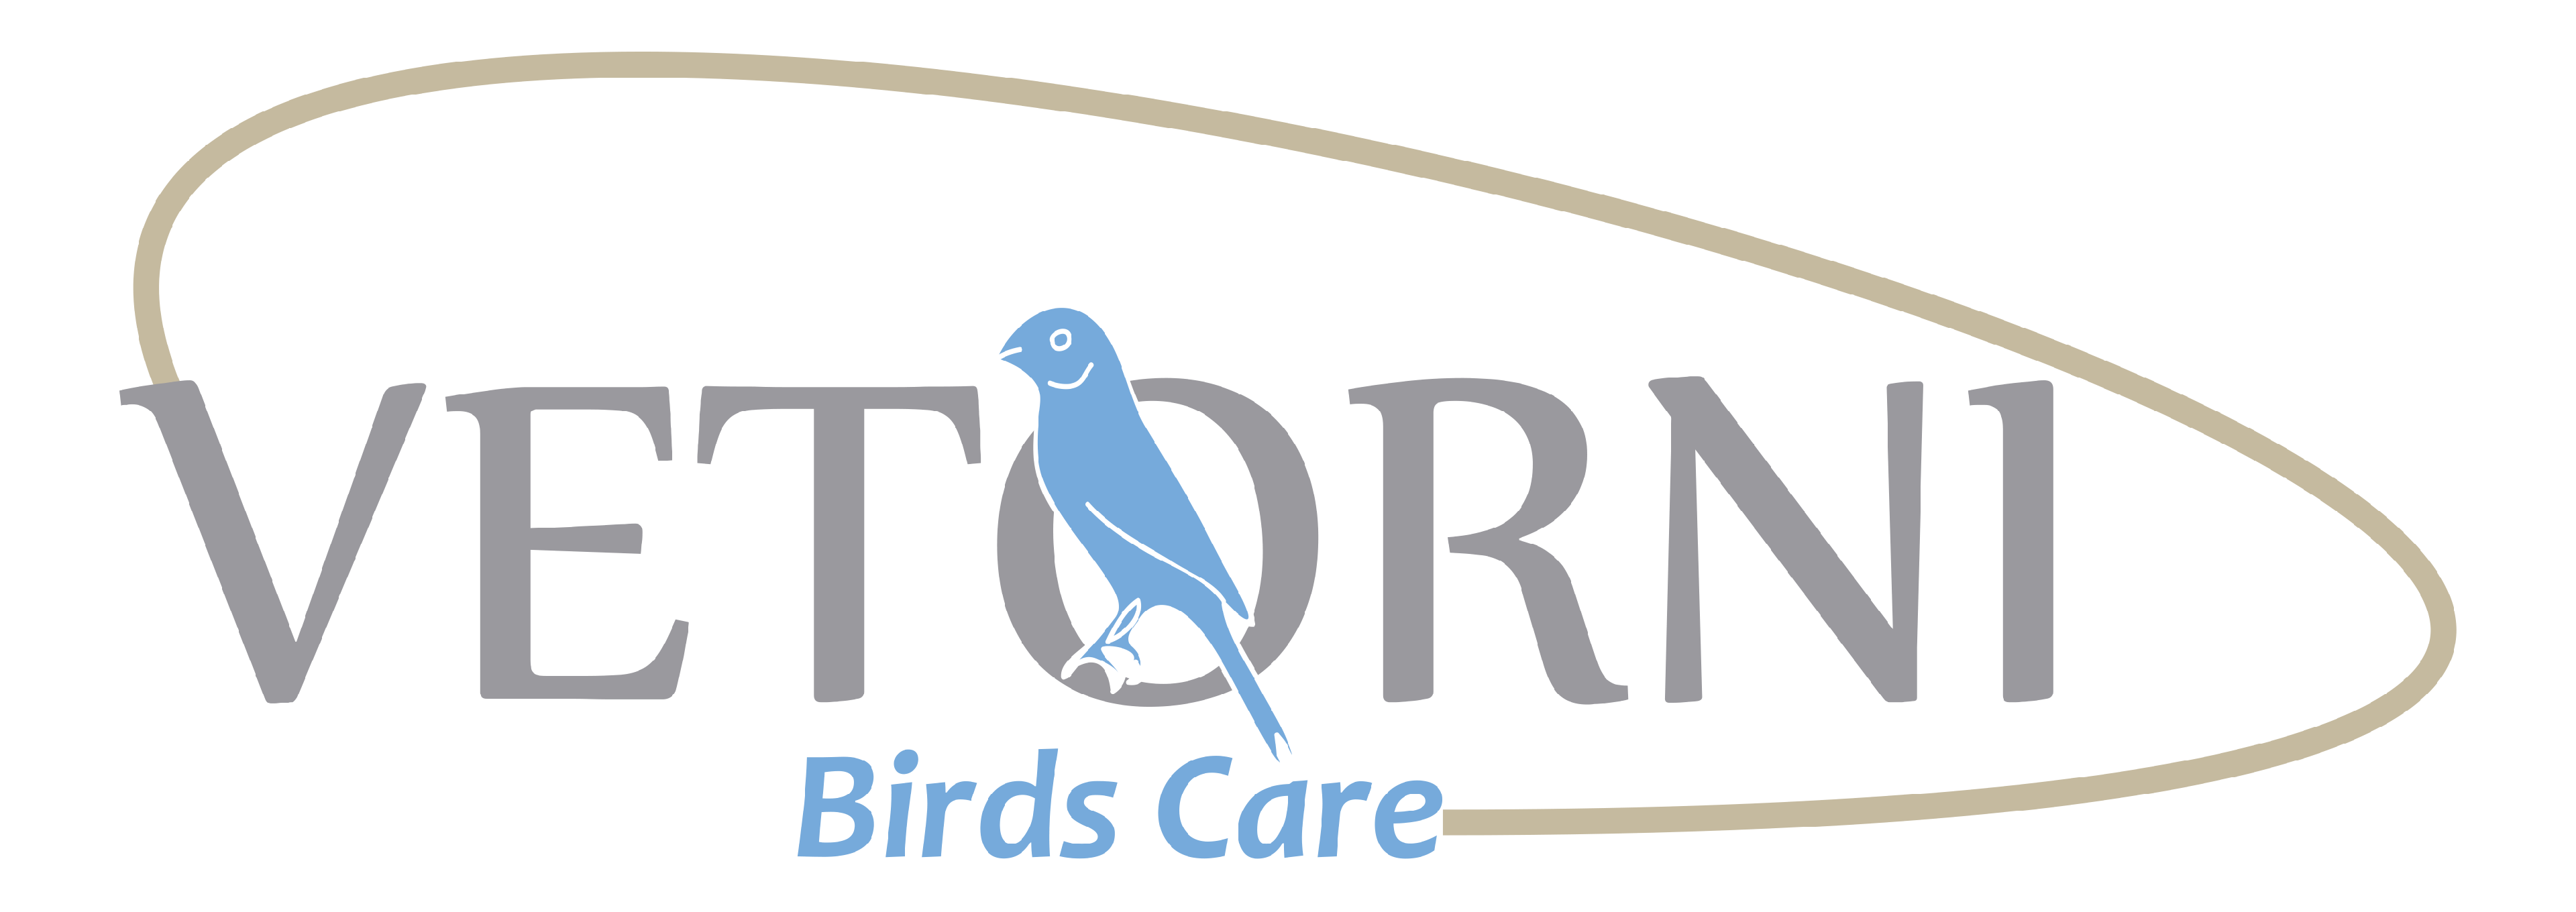 Vetorni Birds Care